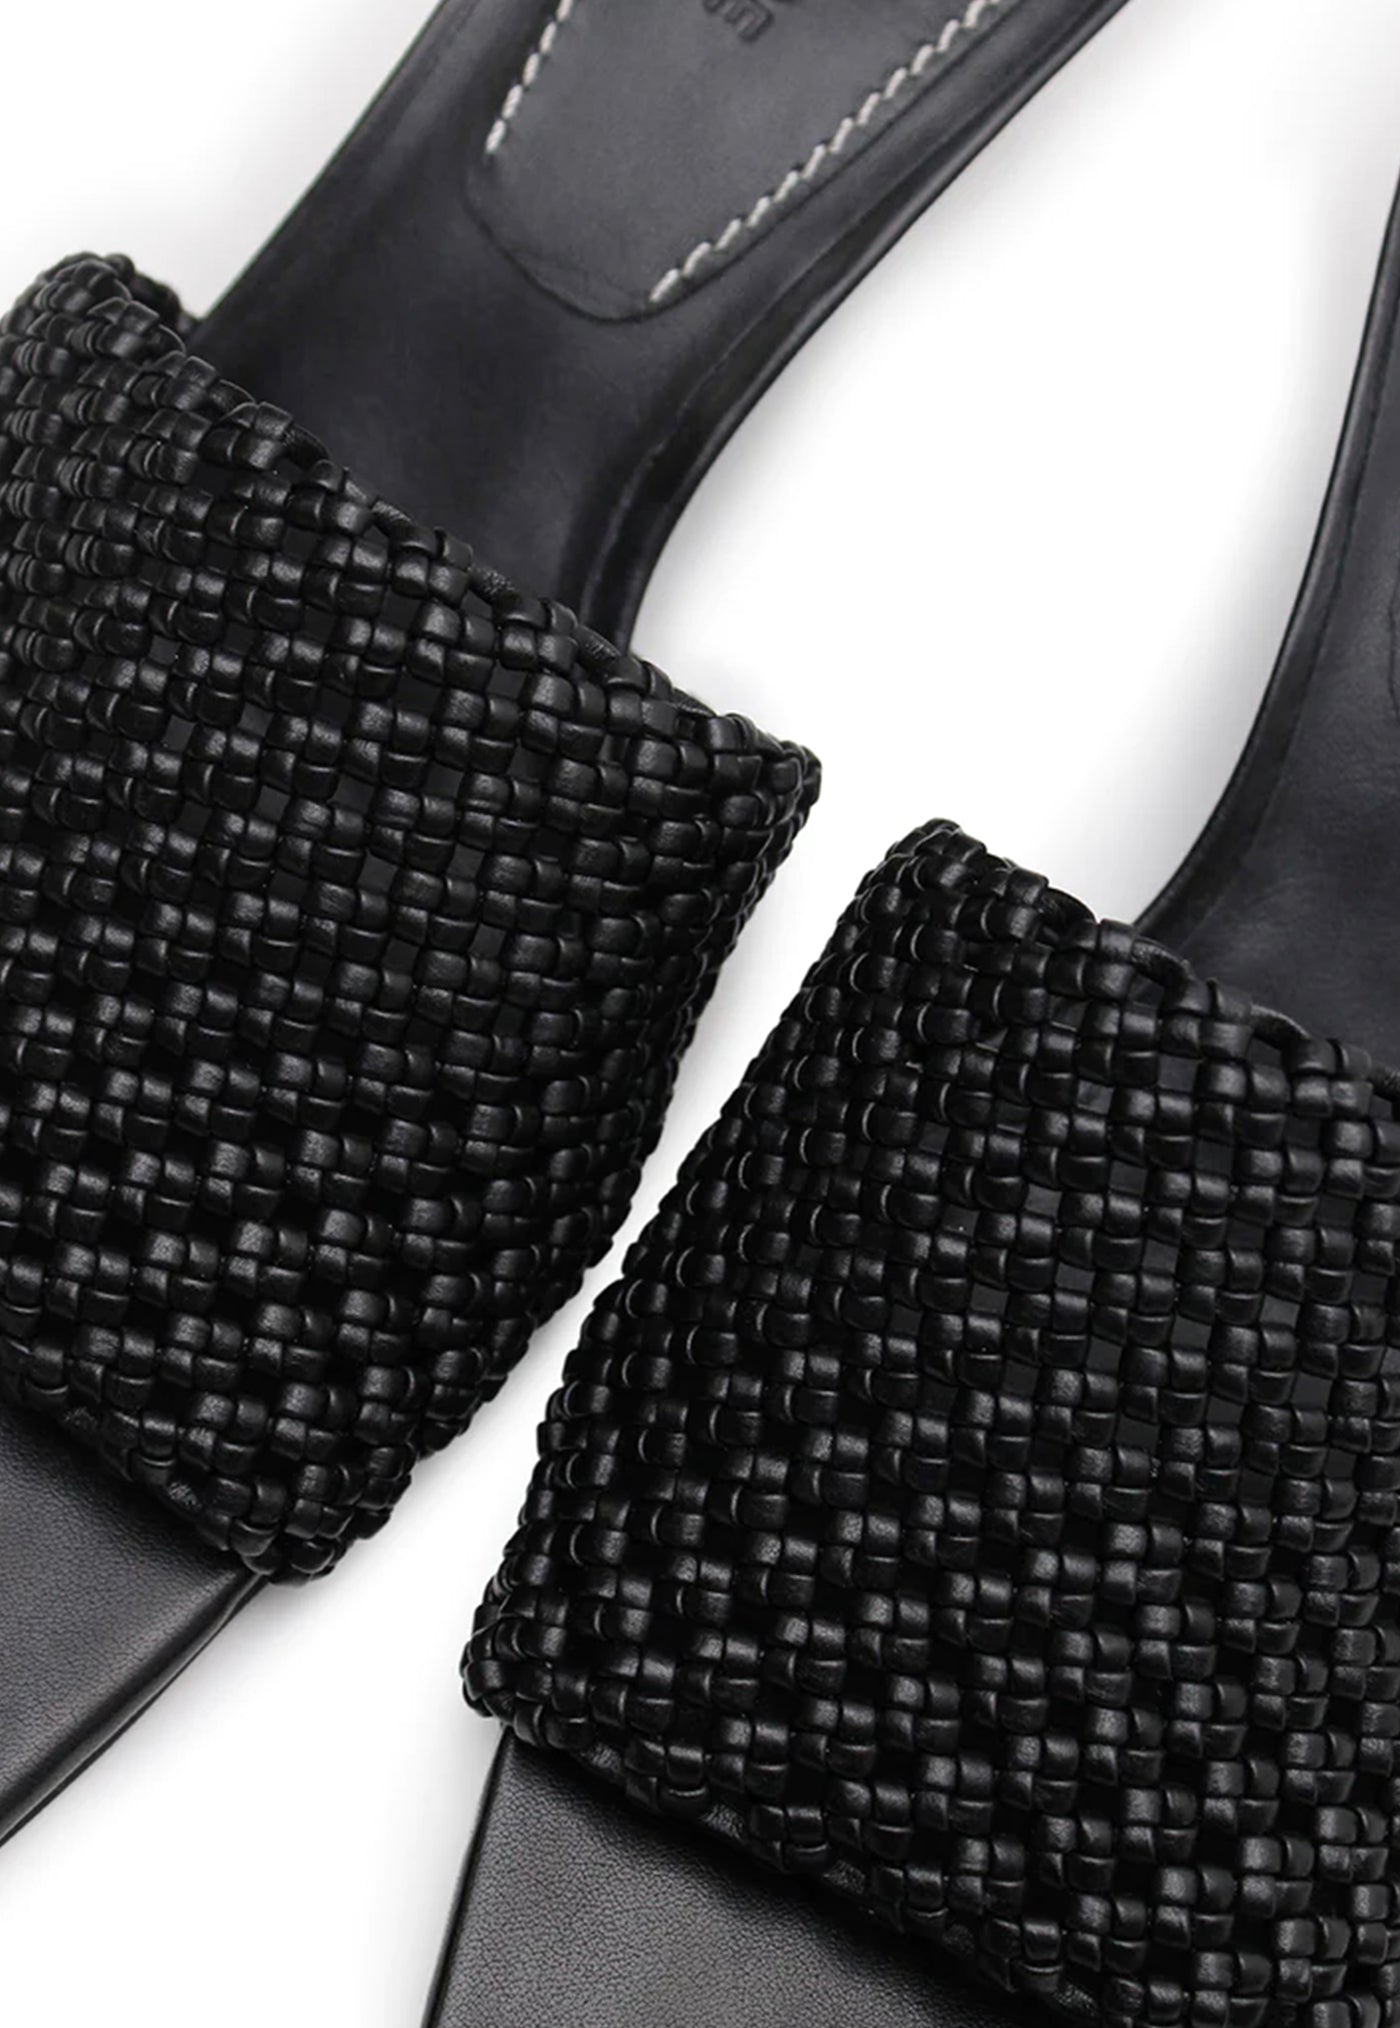 Braided Wedge Heel - Black sold by Angel Divine